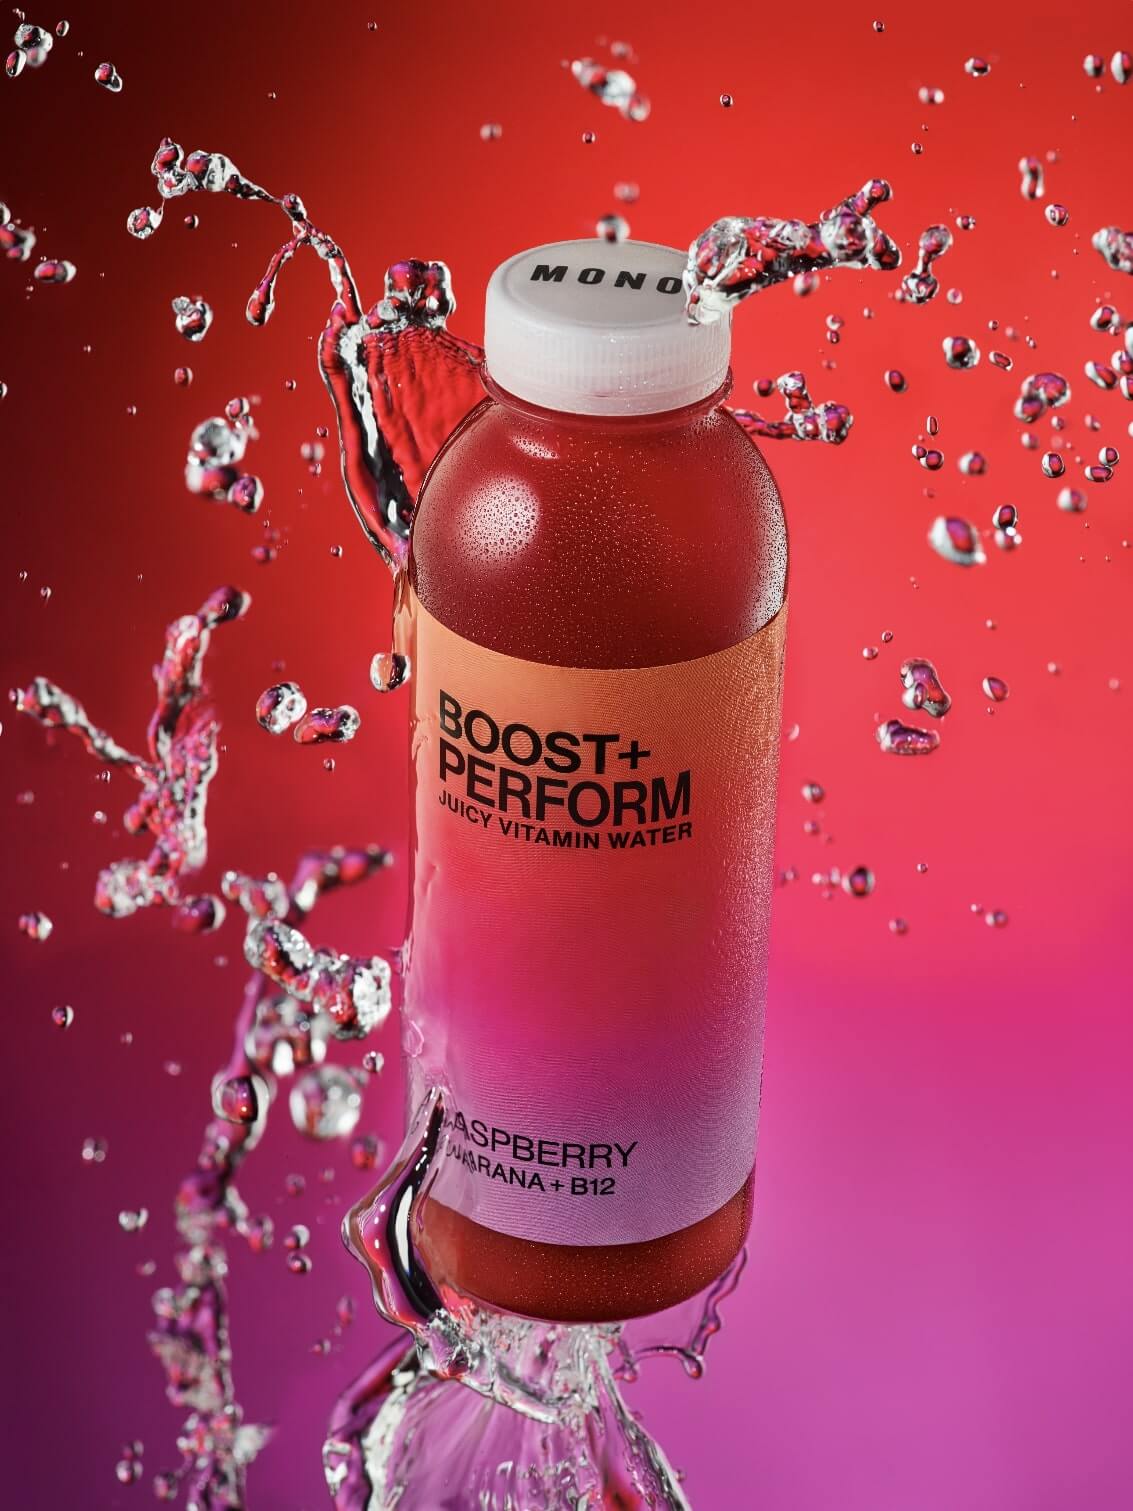 MONO Juicy Vitaminwater BOOST + FOCUS vor einem  rot-violetten Hintergrund